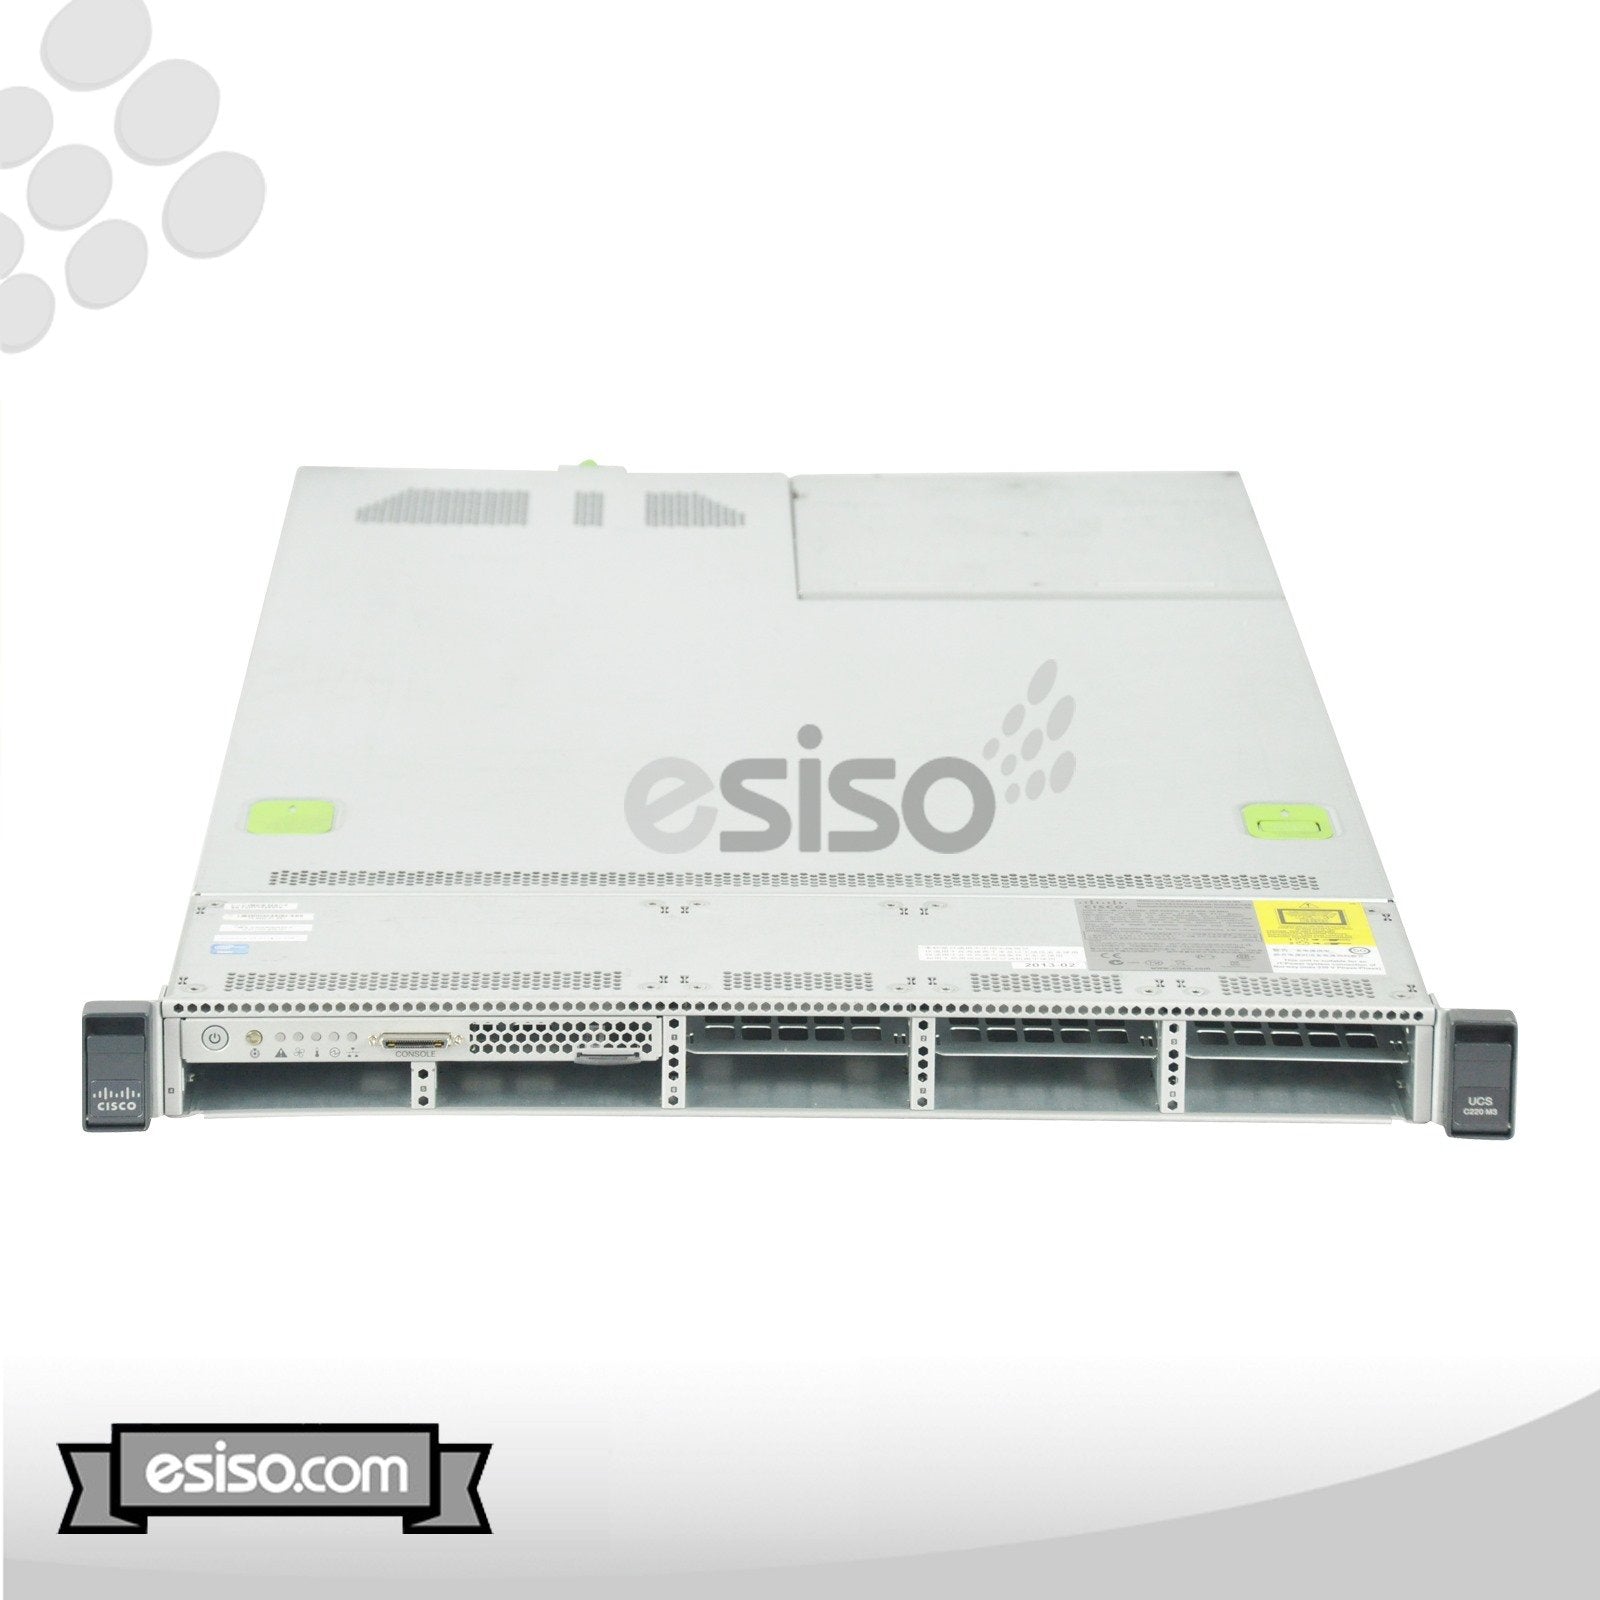 CISCO UCS C220 M3 8SFF SERVER 2x 8 CORE E5-2650v2 2.6GHz 16GB RAM NO HDD